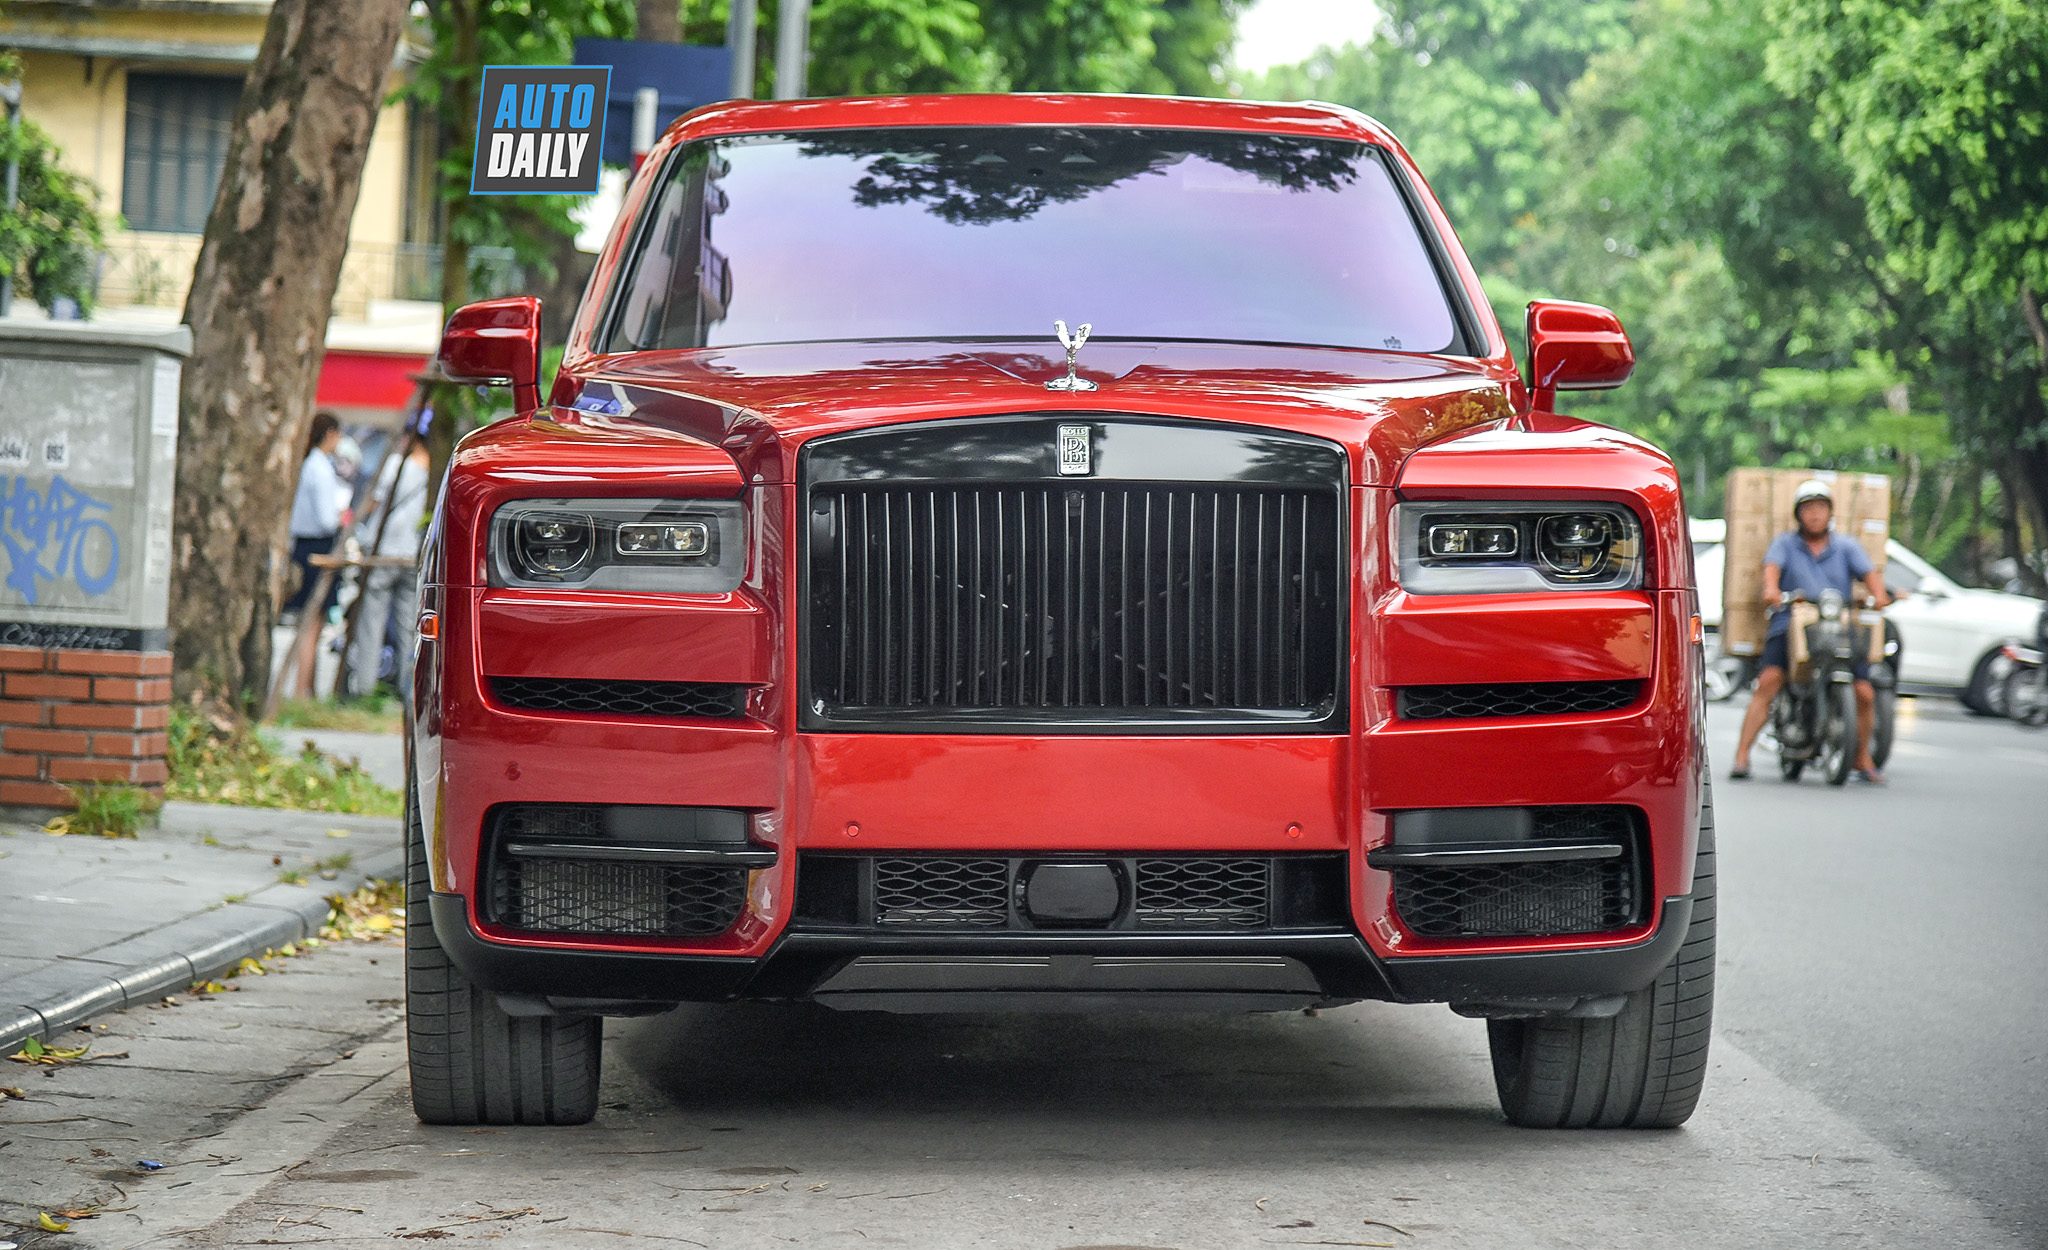 Bảng giá xe Rolls-Royce mới nhất tại Việt Nam: Cullinan giảm gần 10 tỷ